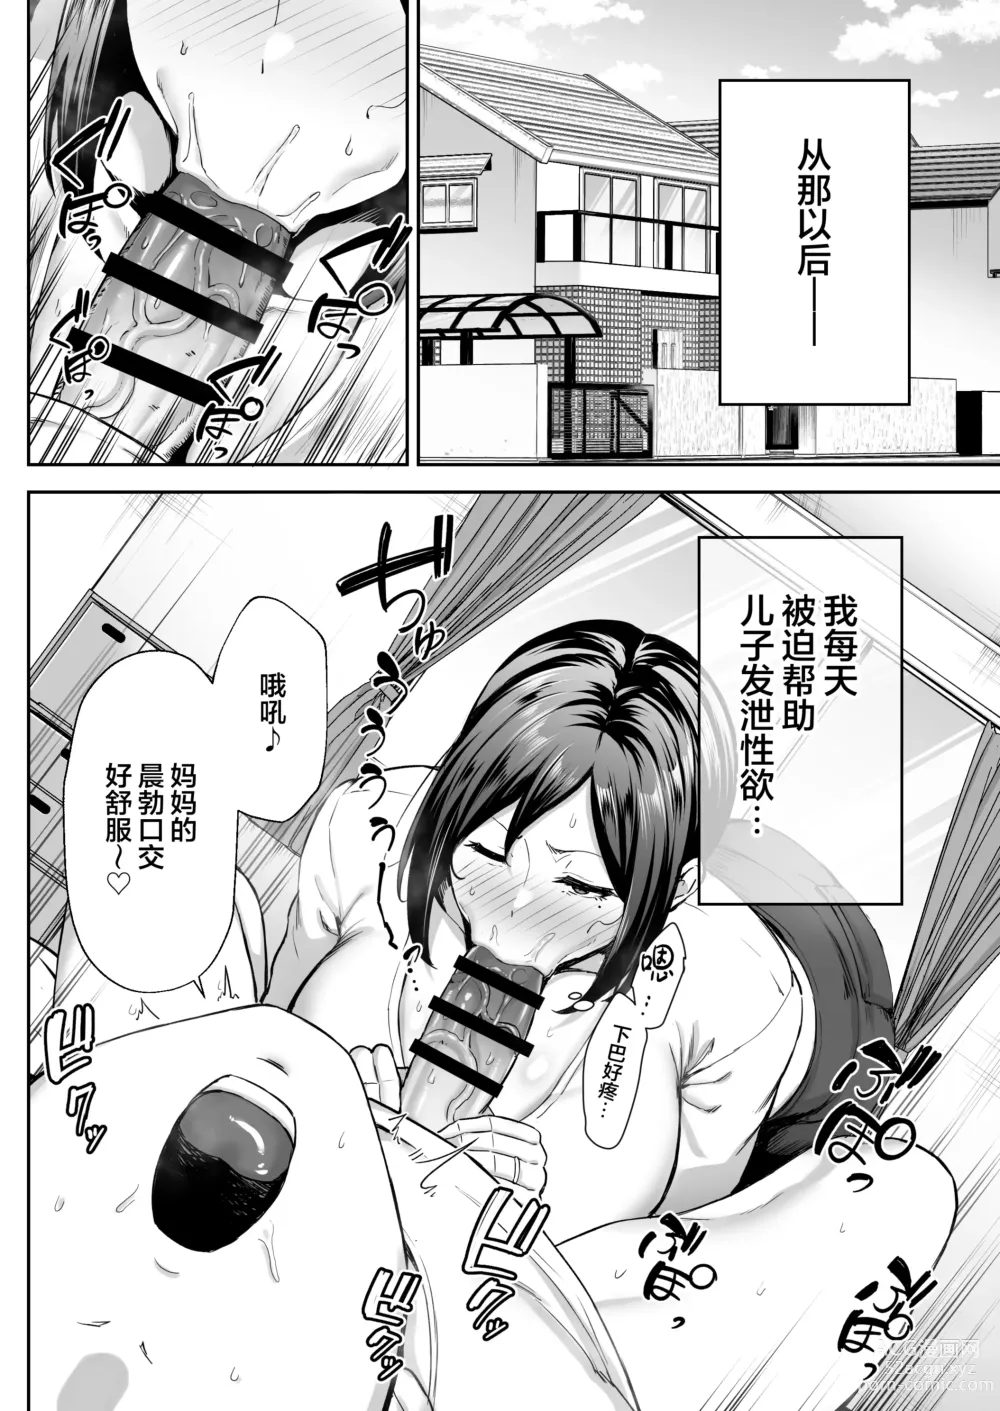 Page 18 of manga [Golden Bazooka (Gagarin Yoshi) Ichiban Mimoto de Eroi Mesuki ~ Haha Dakedo, Shiko Saru Musuko ni Komatteimasu]